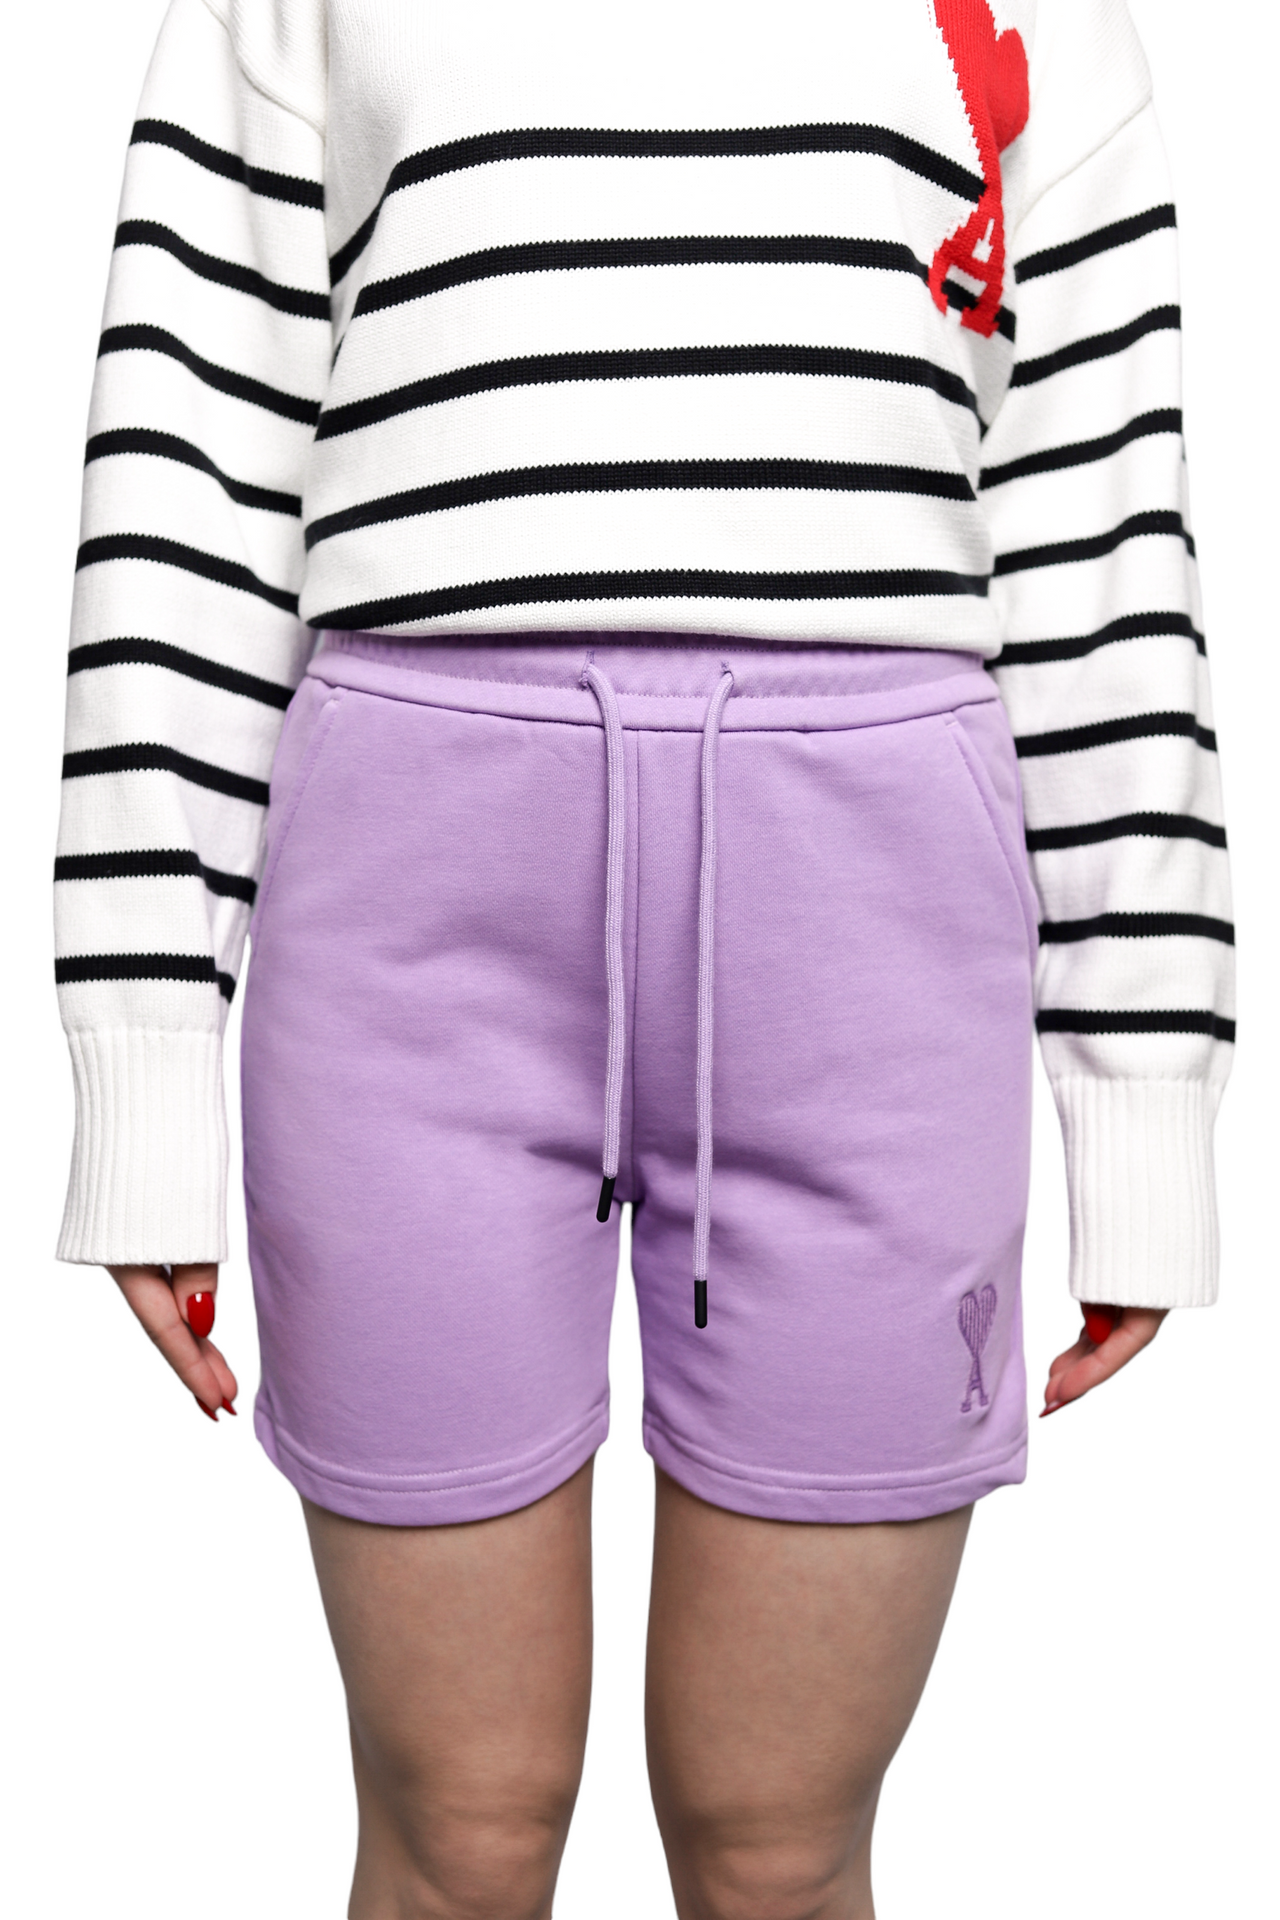 AMI Paris Cotton Shortened Shorts Purple